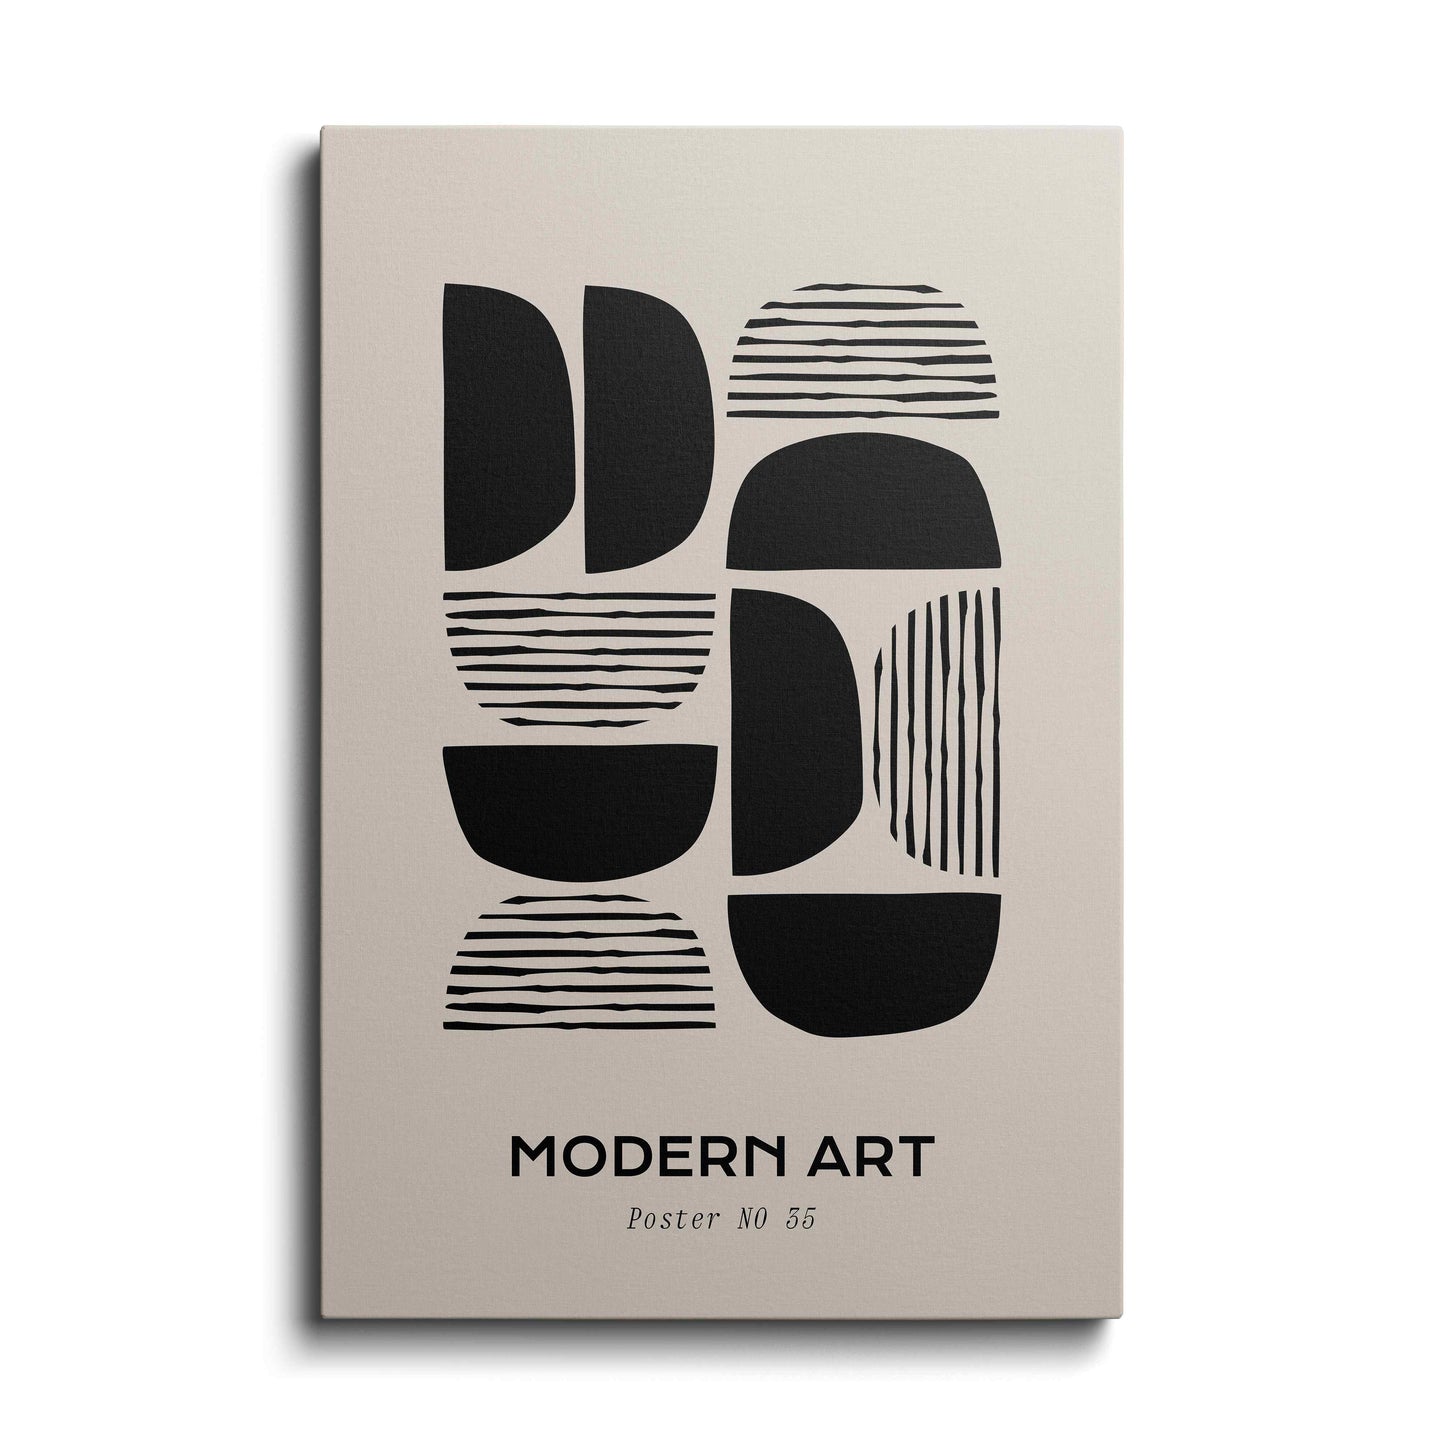 The Design - Modern Art---